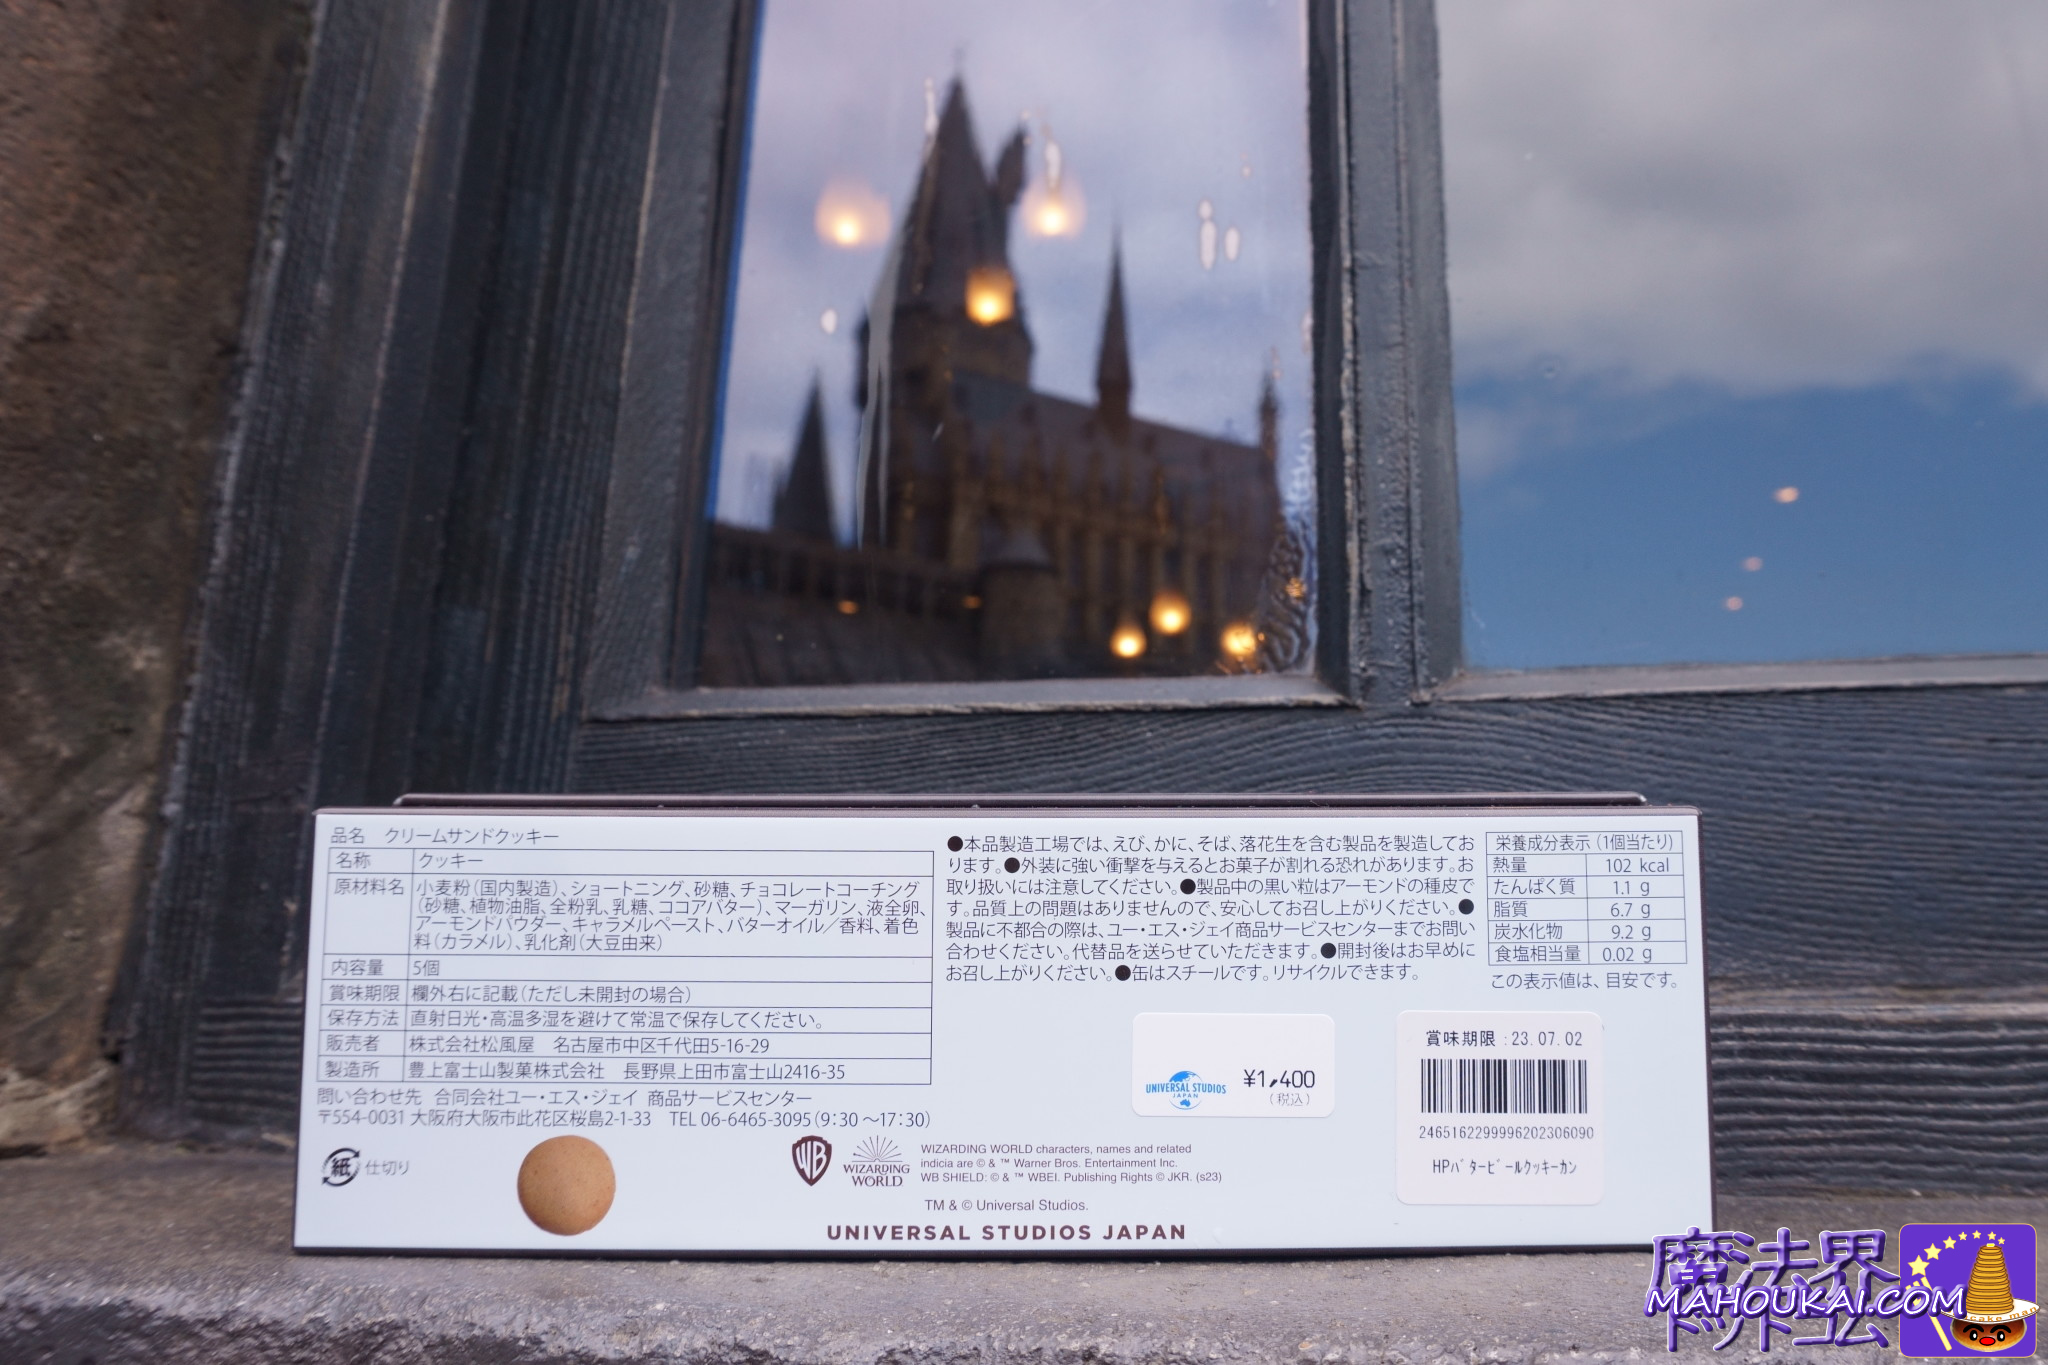 New snacks] Butterbeer Cream Sandwich Biscuits (Cookies)｜Honeydukes USJ "Harry Potter Area".